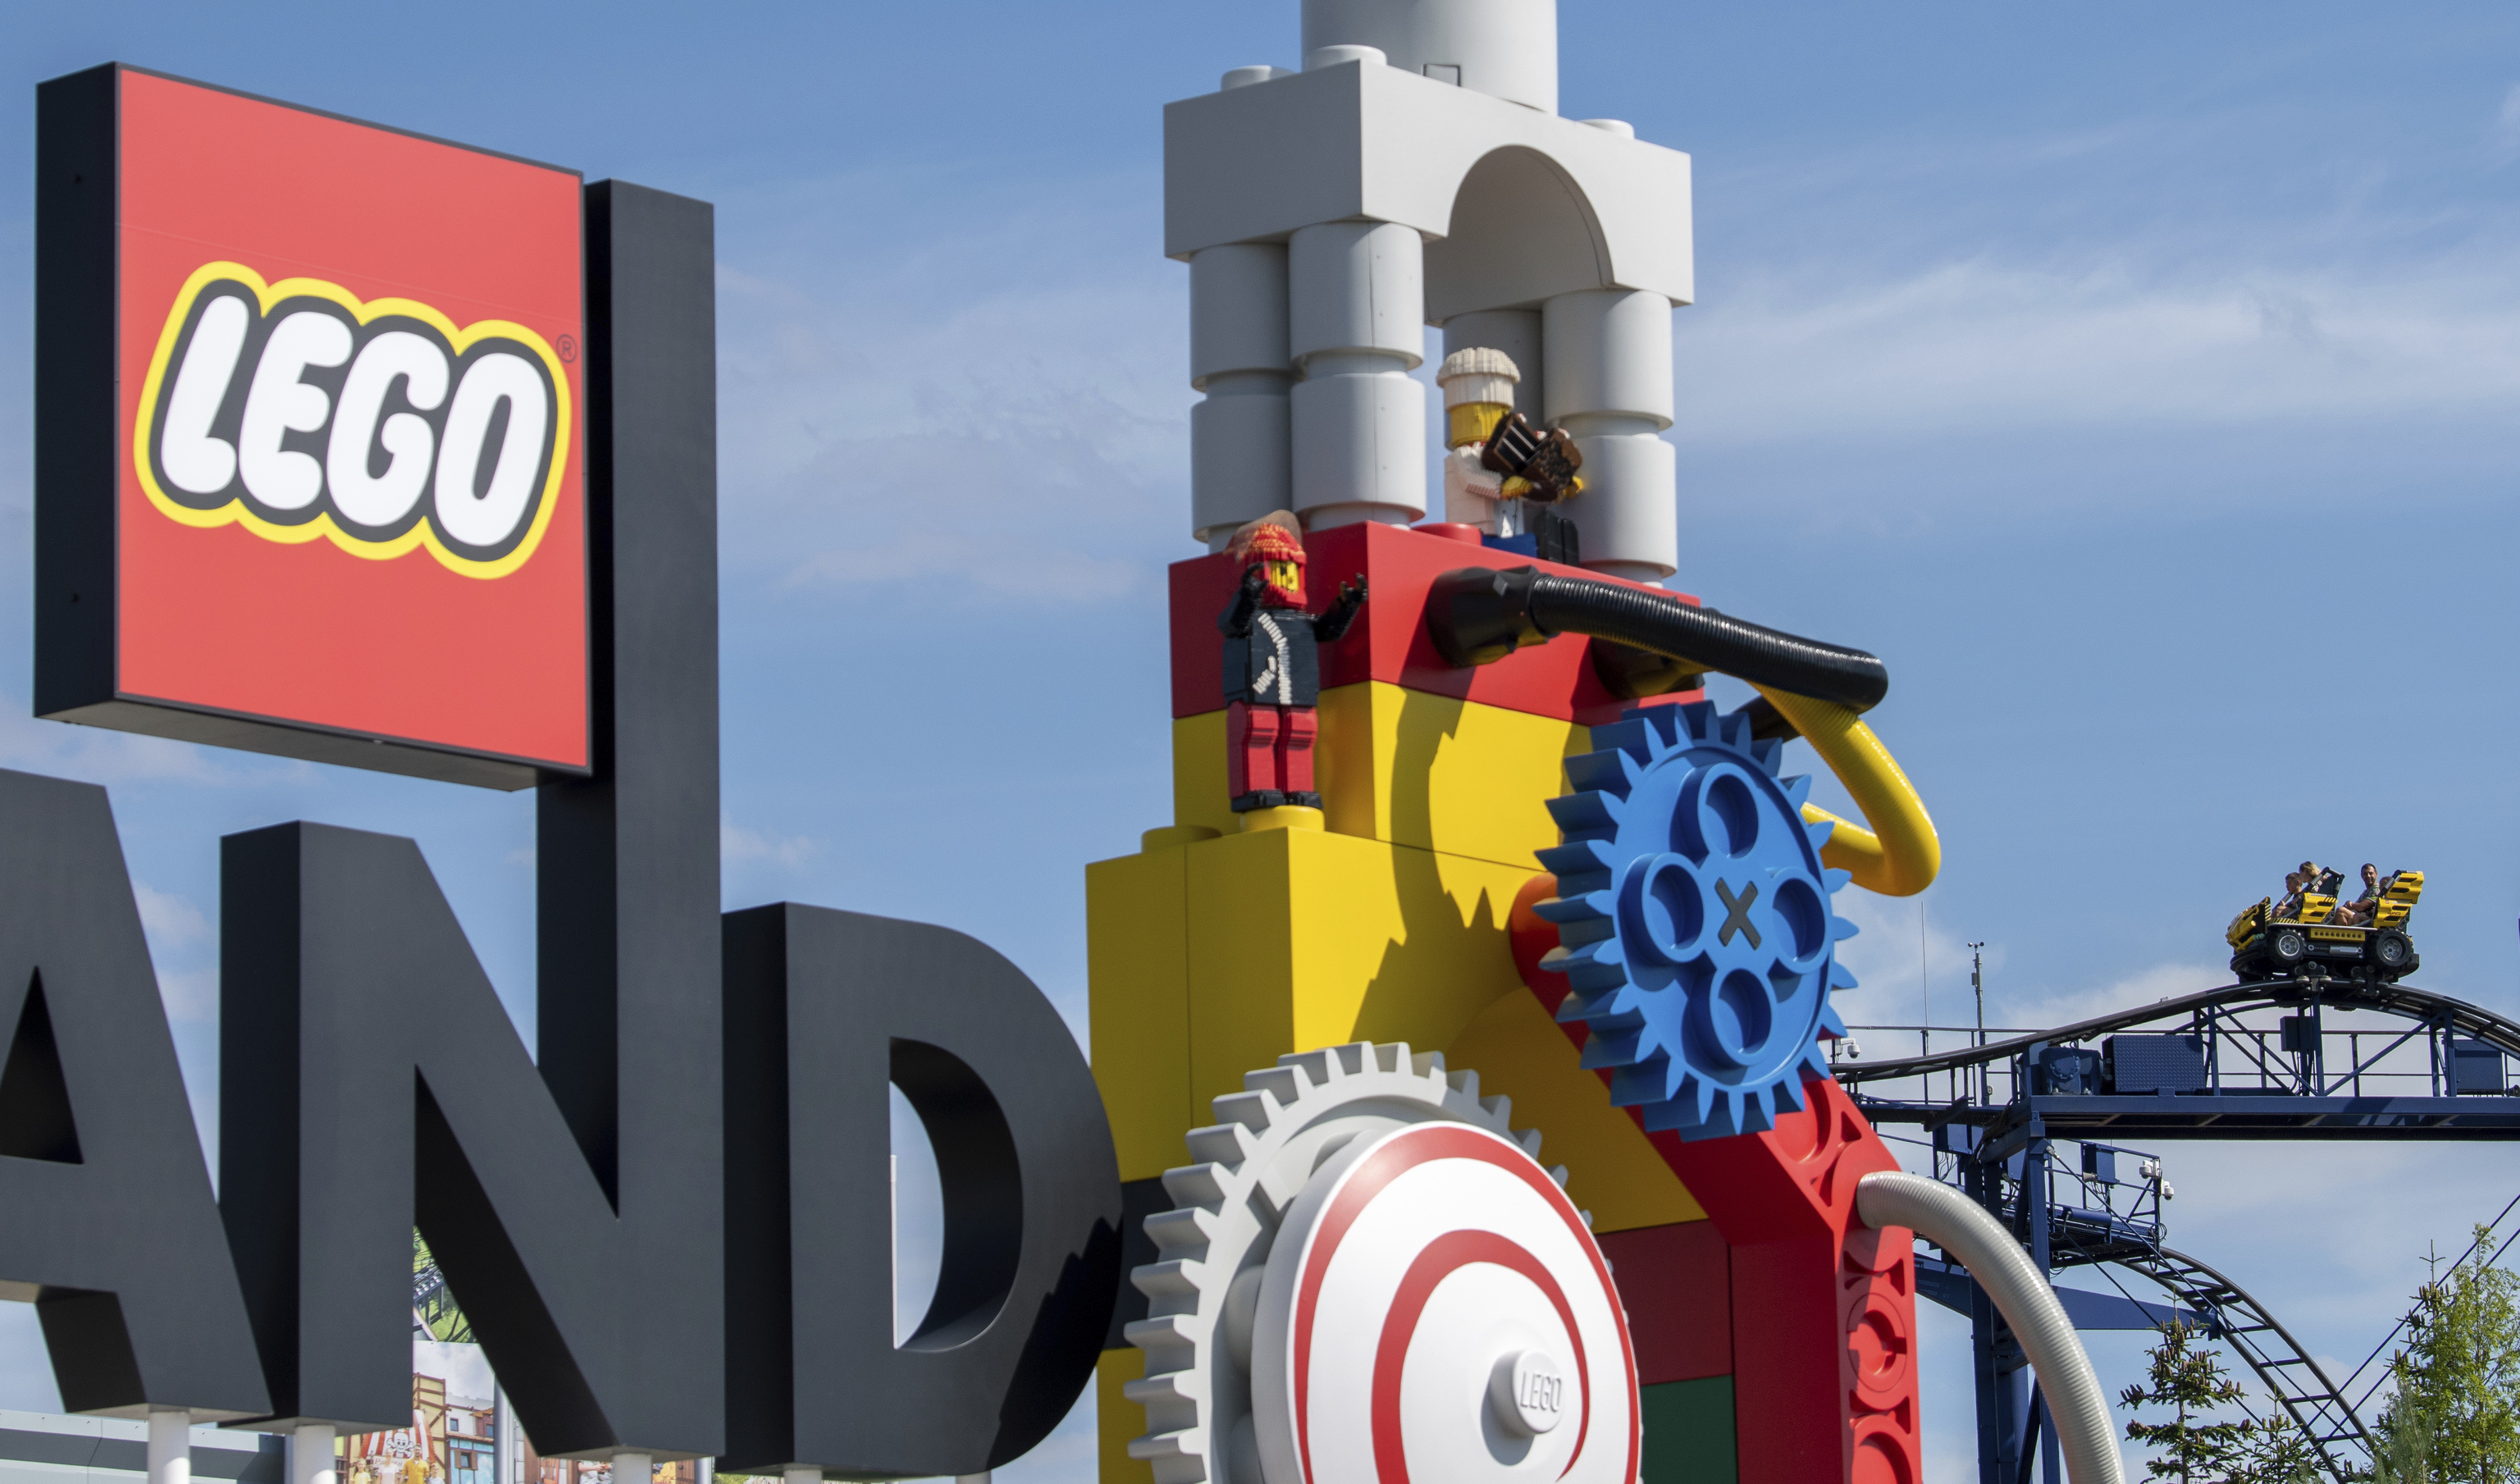 Un accidente en Legoland Alemania deja al menos 31 heridos, uno de ellos grave